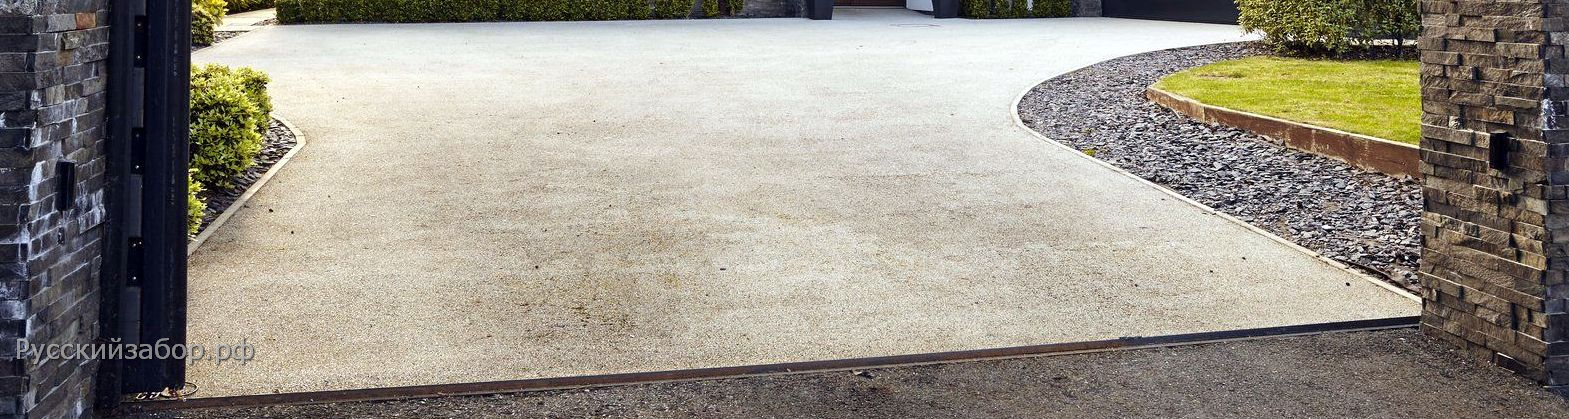 Как правильно рассчитать объём бетона при заливке двора?